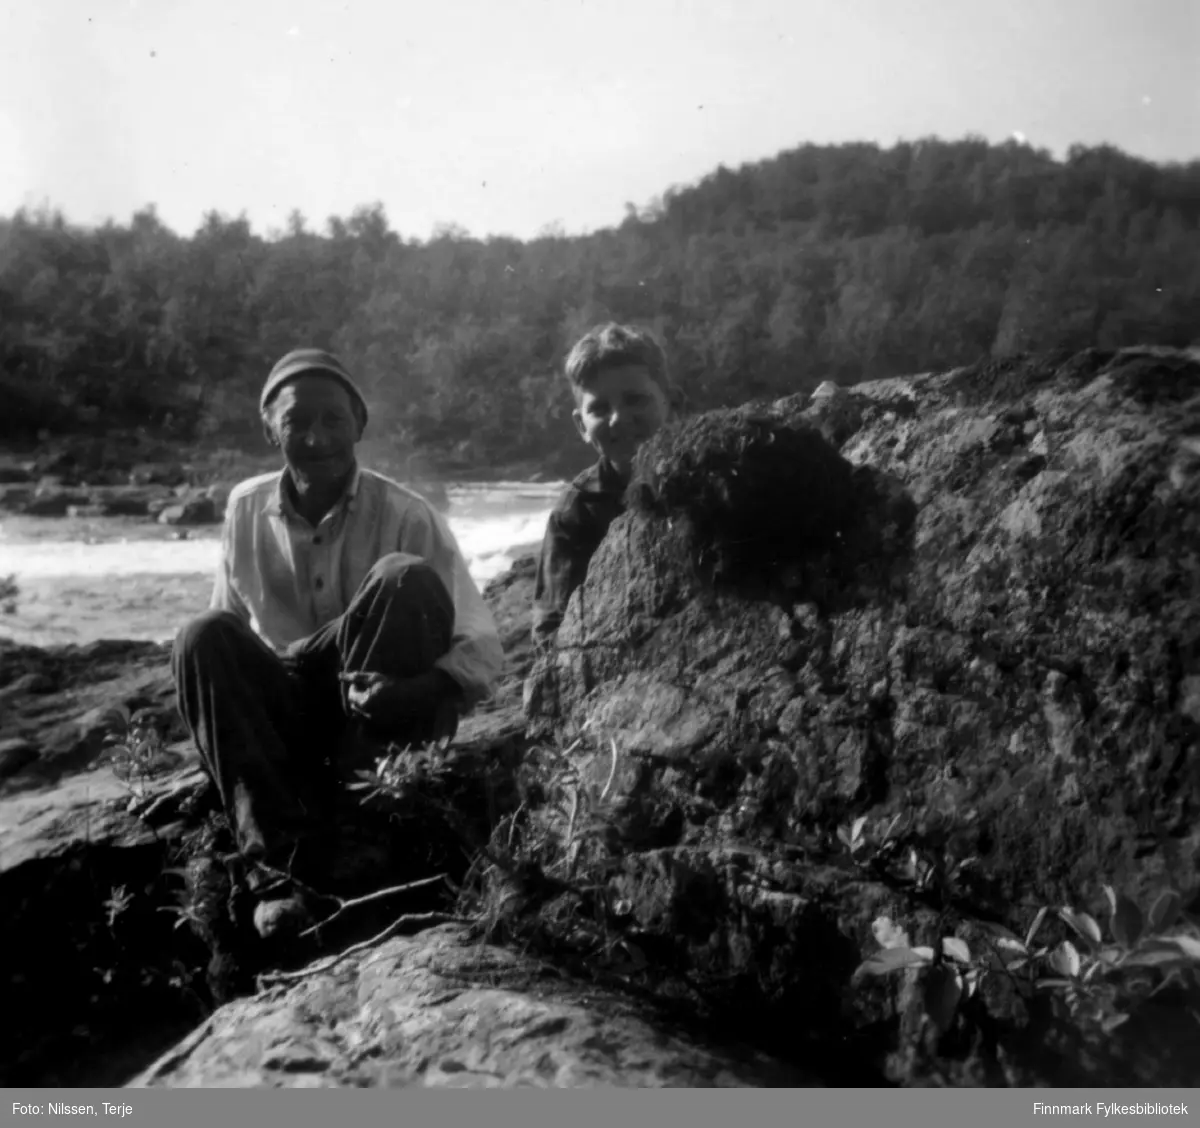 Ved Krokfossen i Neidenelva, 1957. Albert Saari og Egil Nilssen ved fossekallens rede. Albert var Egils grandonkel. Bildet er tatt på Albert Saaris eiendom Fossli